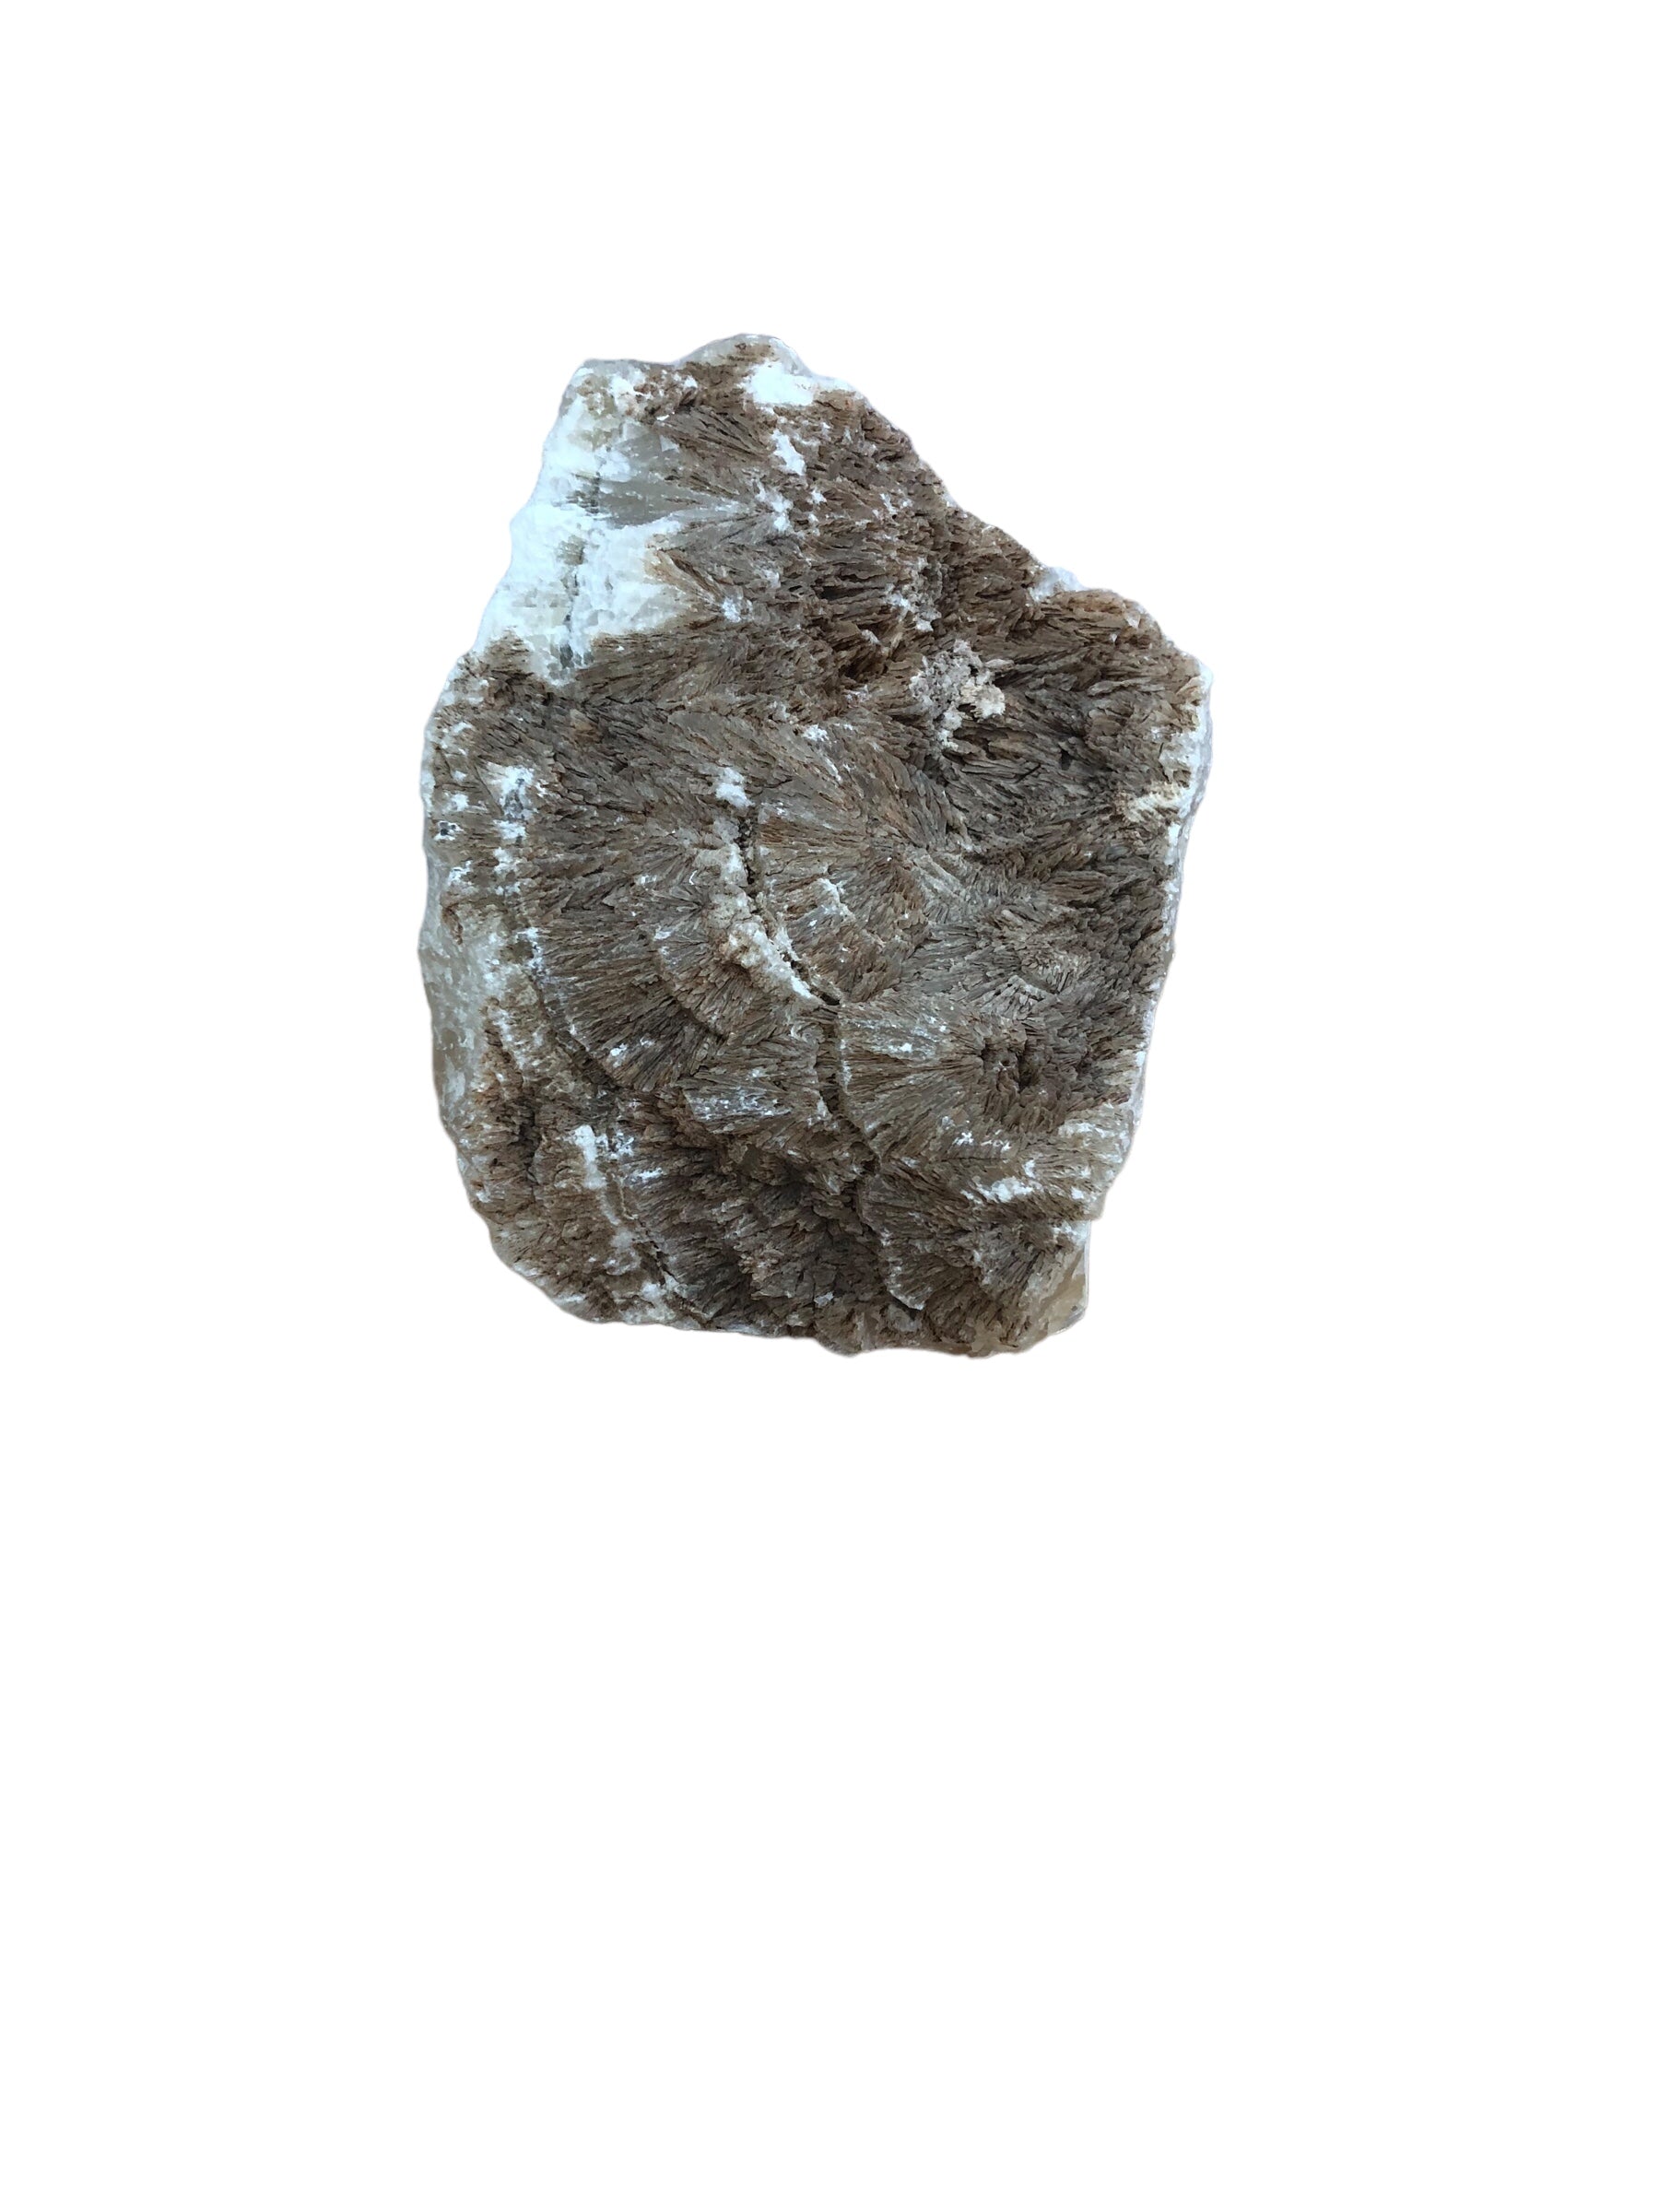 Crystalized stone on base